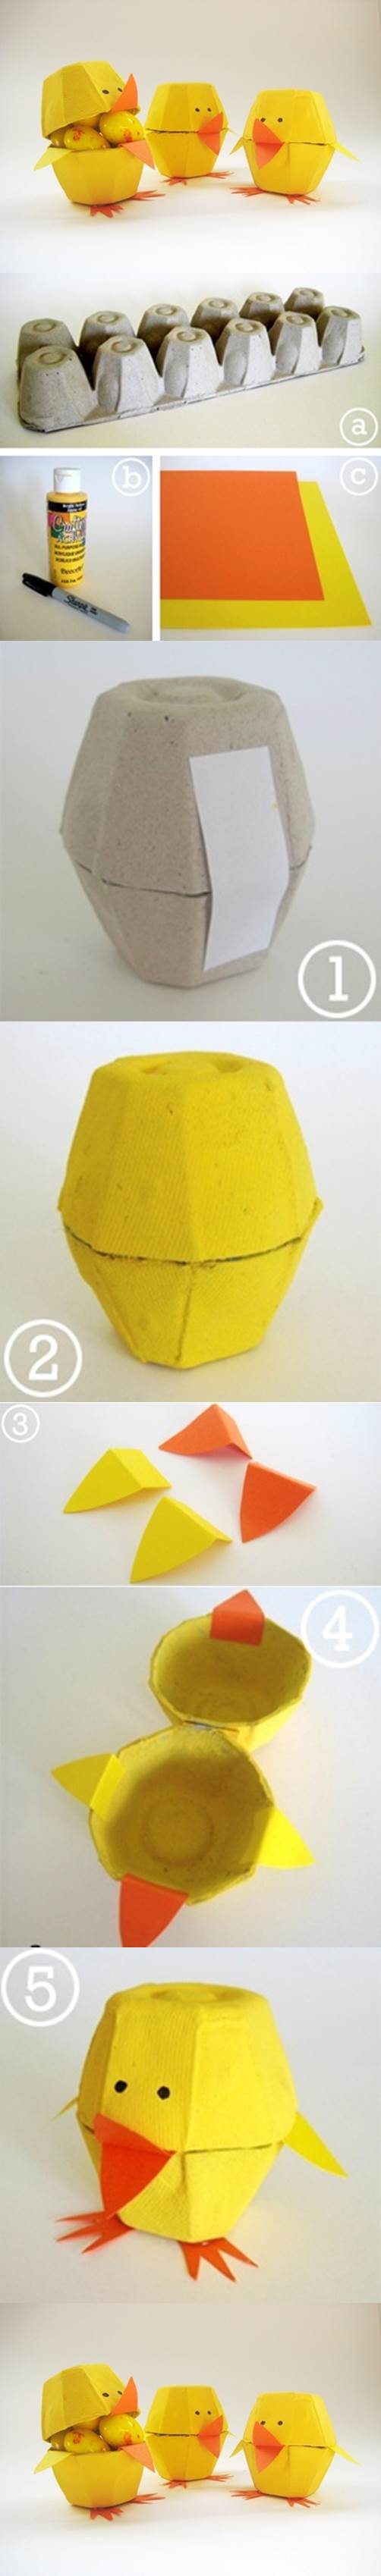 Egg Carton Craft - Lovely Chicks 2